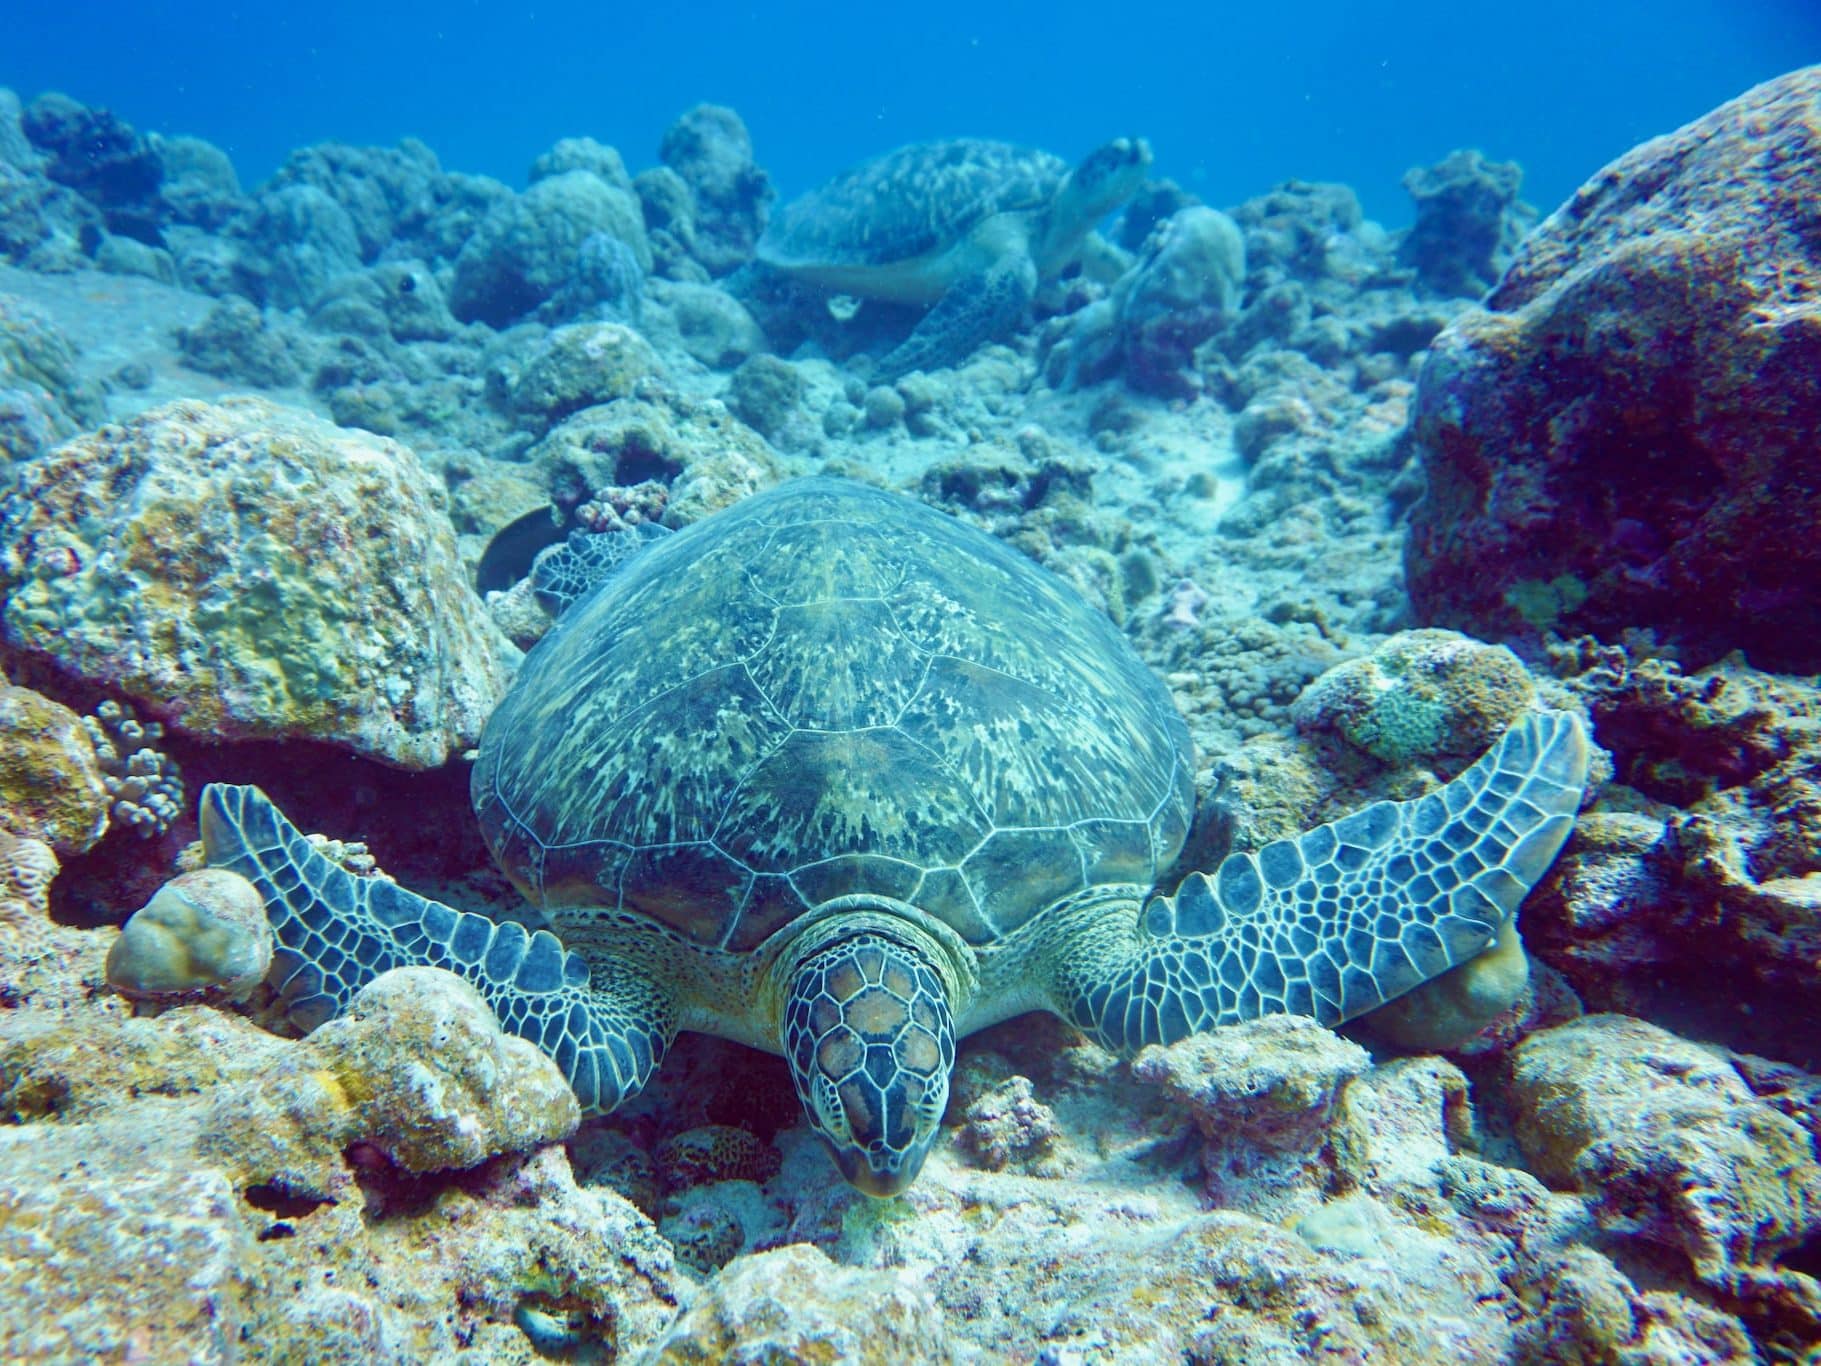 Tijdens het duiken op Mauritius kun je veel meer zeedieren zien, maar je hebt ook een duikbrevet nodig. Als je gewoon snel het water in wilt, is snorkelen op Mauritius je eerste keuze. Foto: Sascha Tegtmeyer Duiken op Mauritius Ervaringsverslag Tips Ervaringen